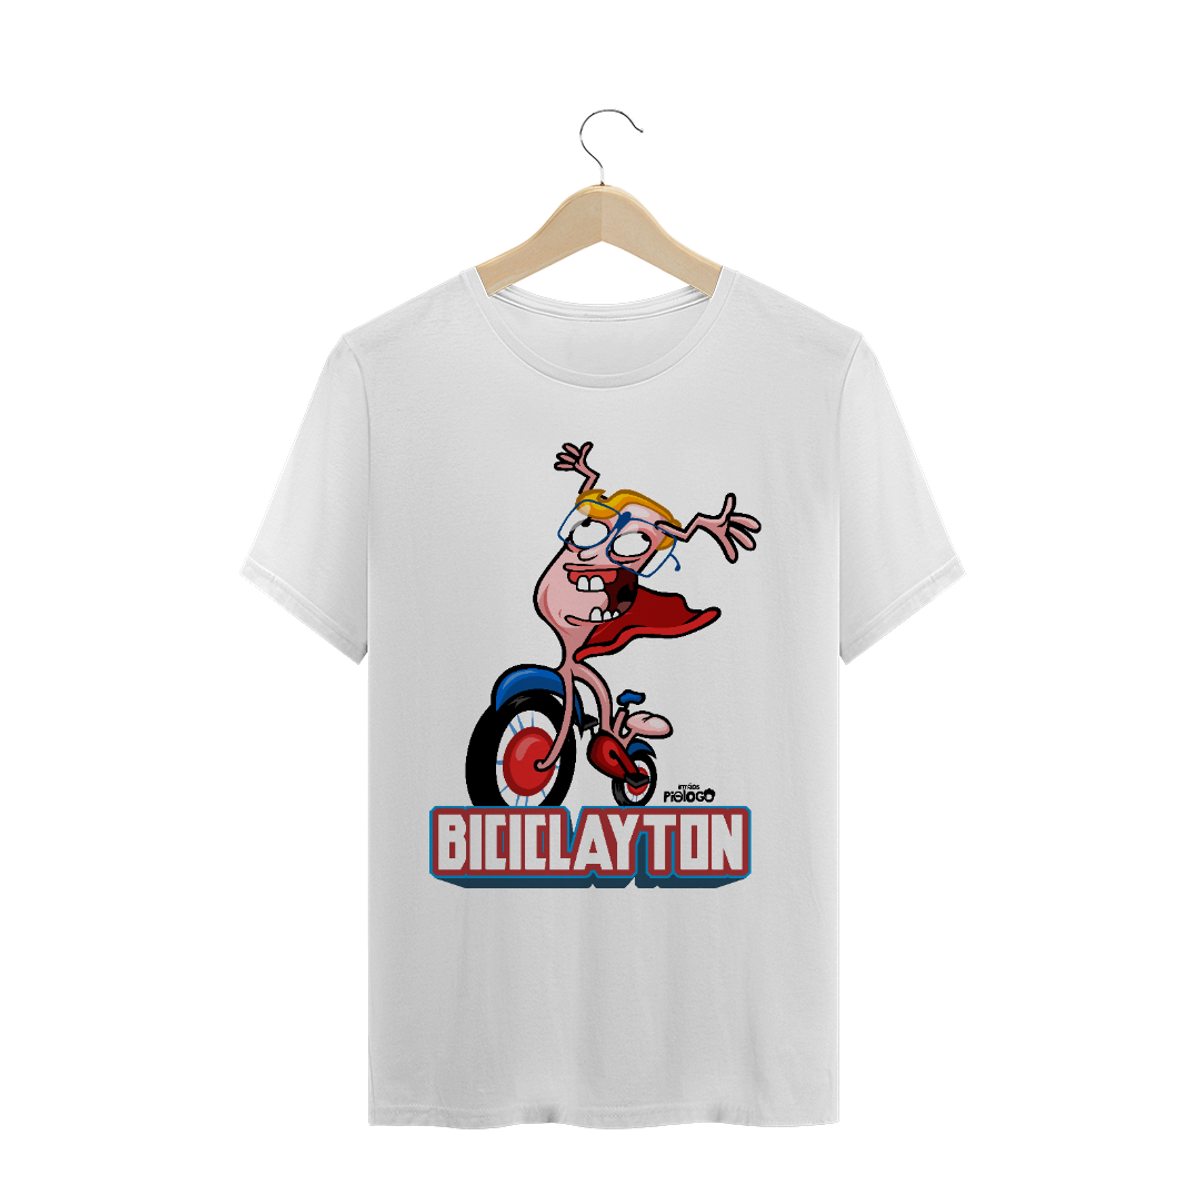 Nome do produto: Biciclayton - Metade Homem, Metade Bicicleta 2